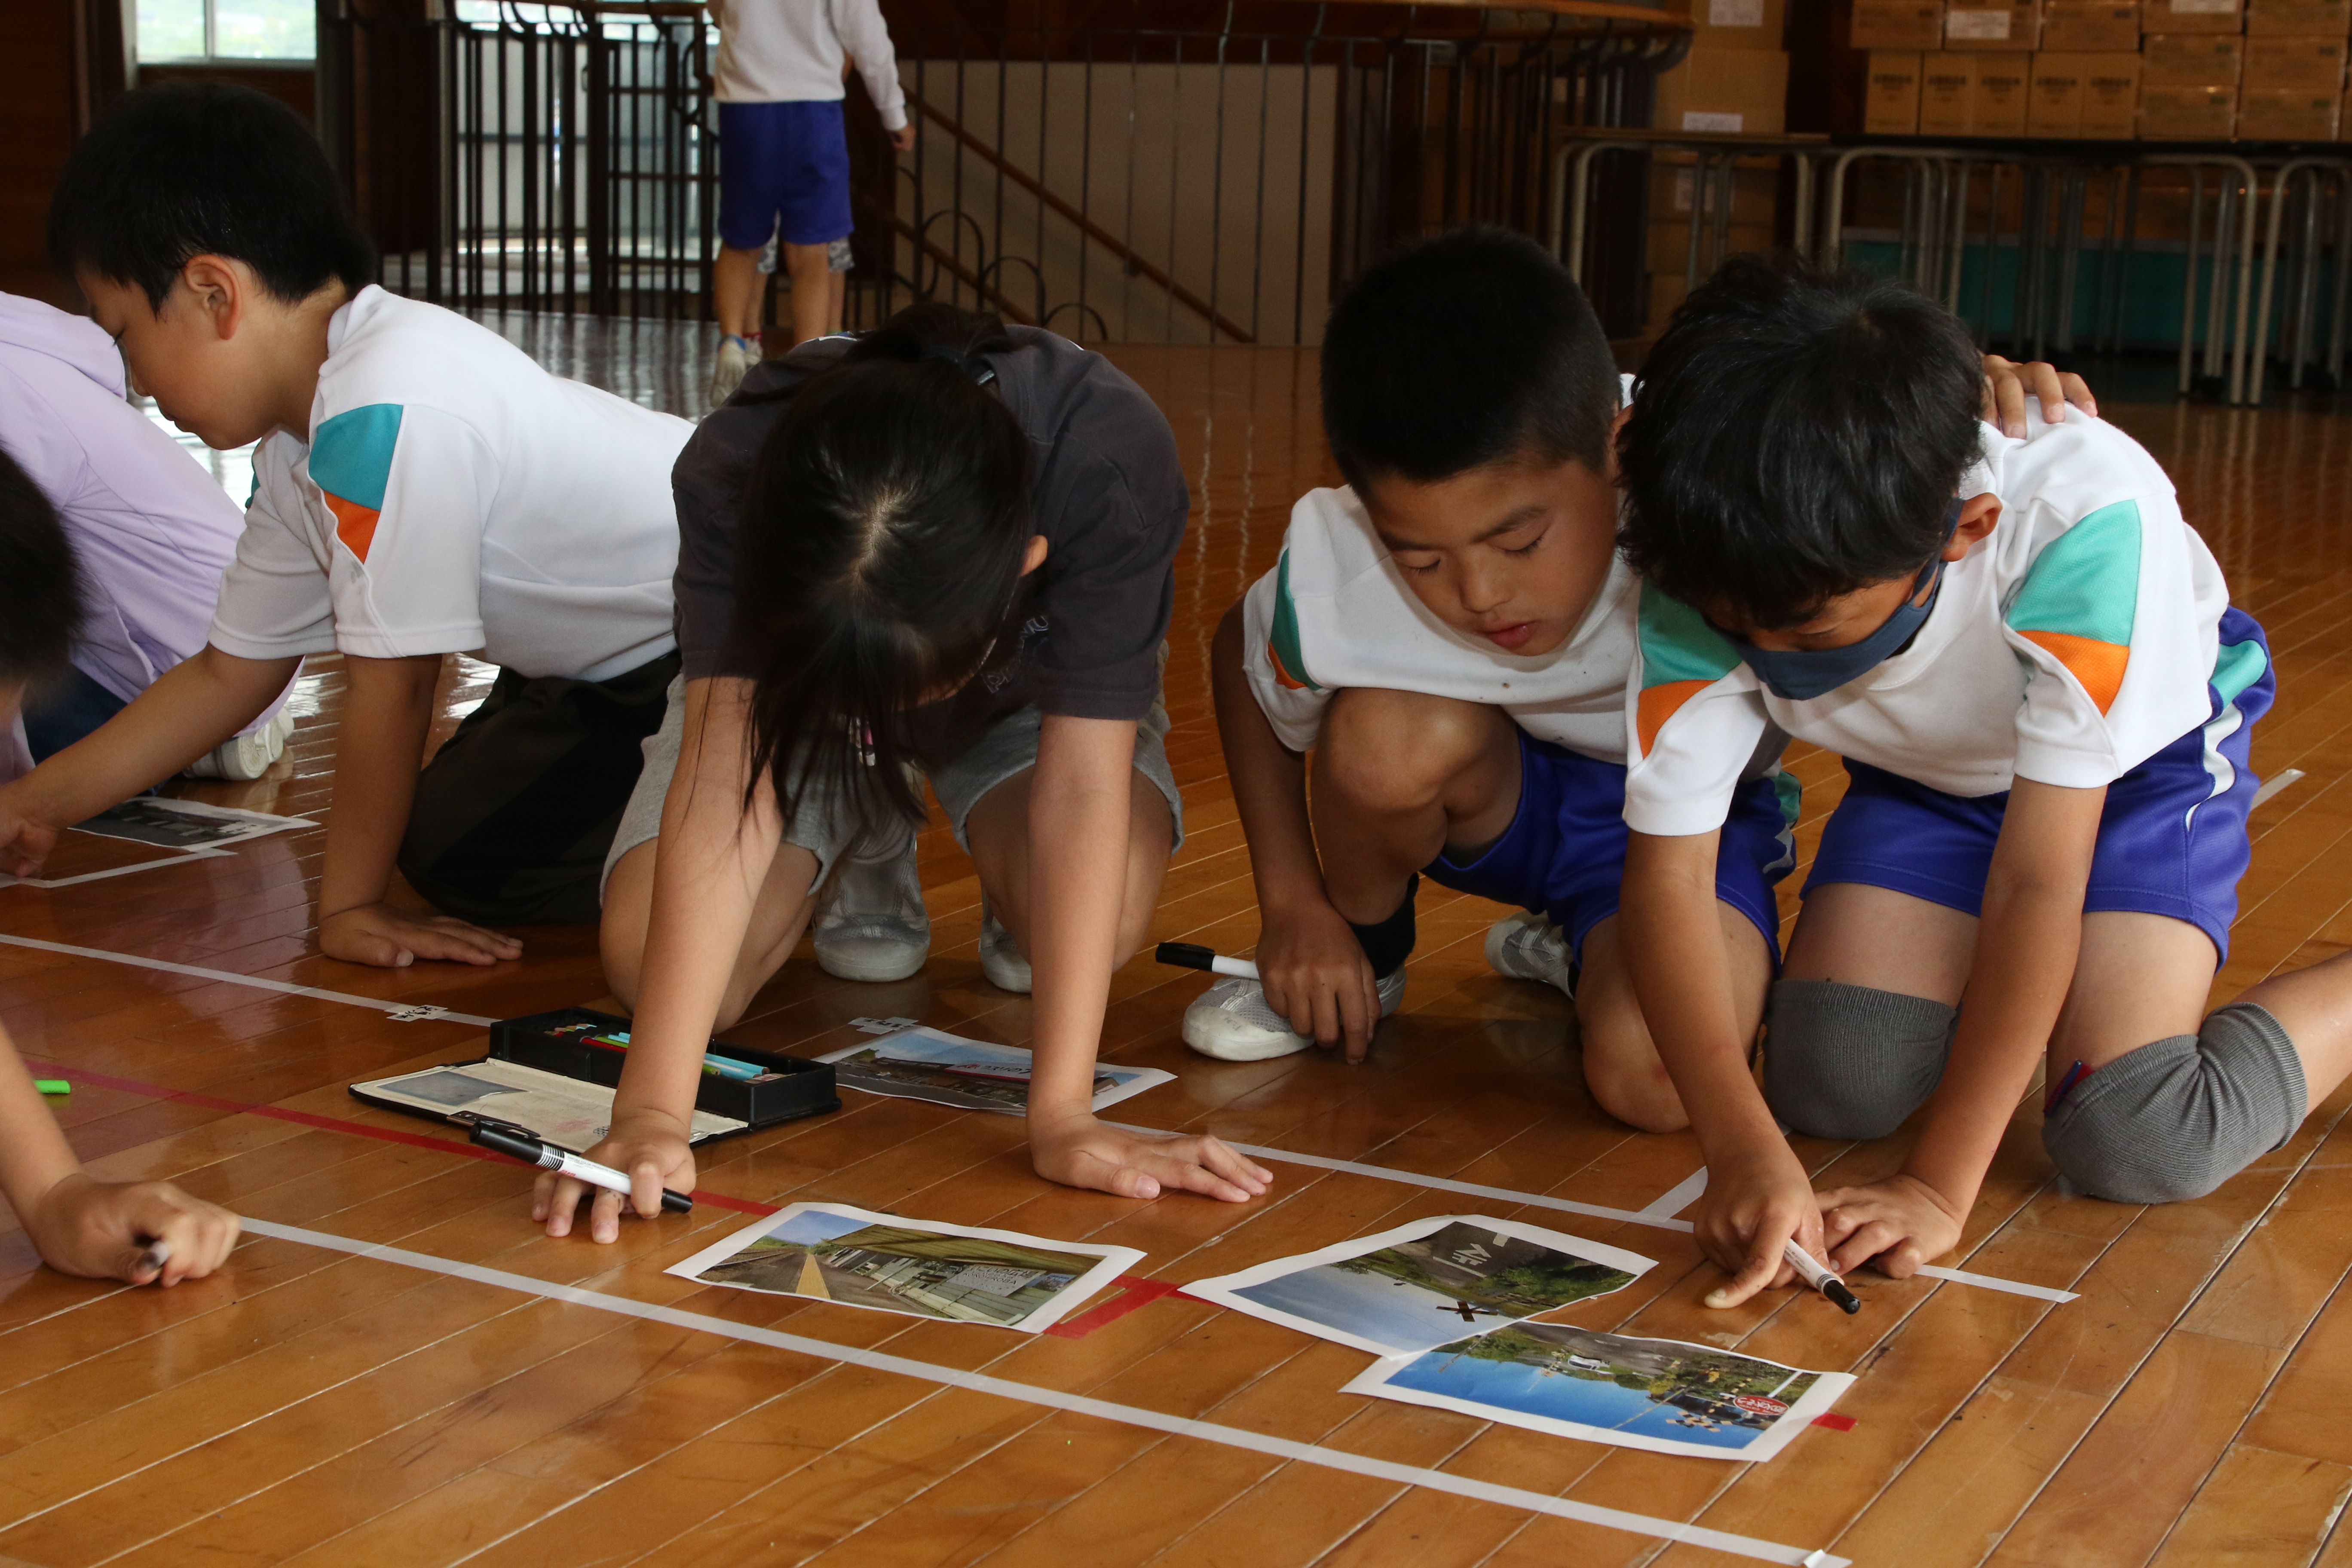 床に作成した大きな地図に地域の写真を貼り付ける生徒たち